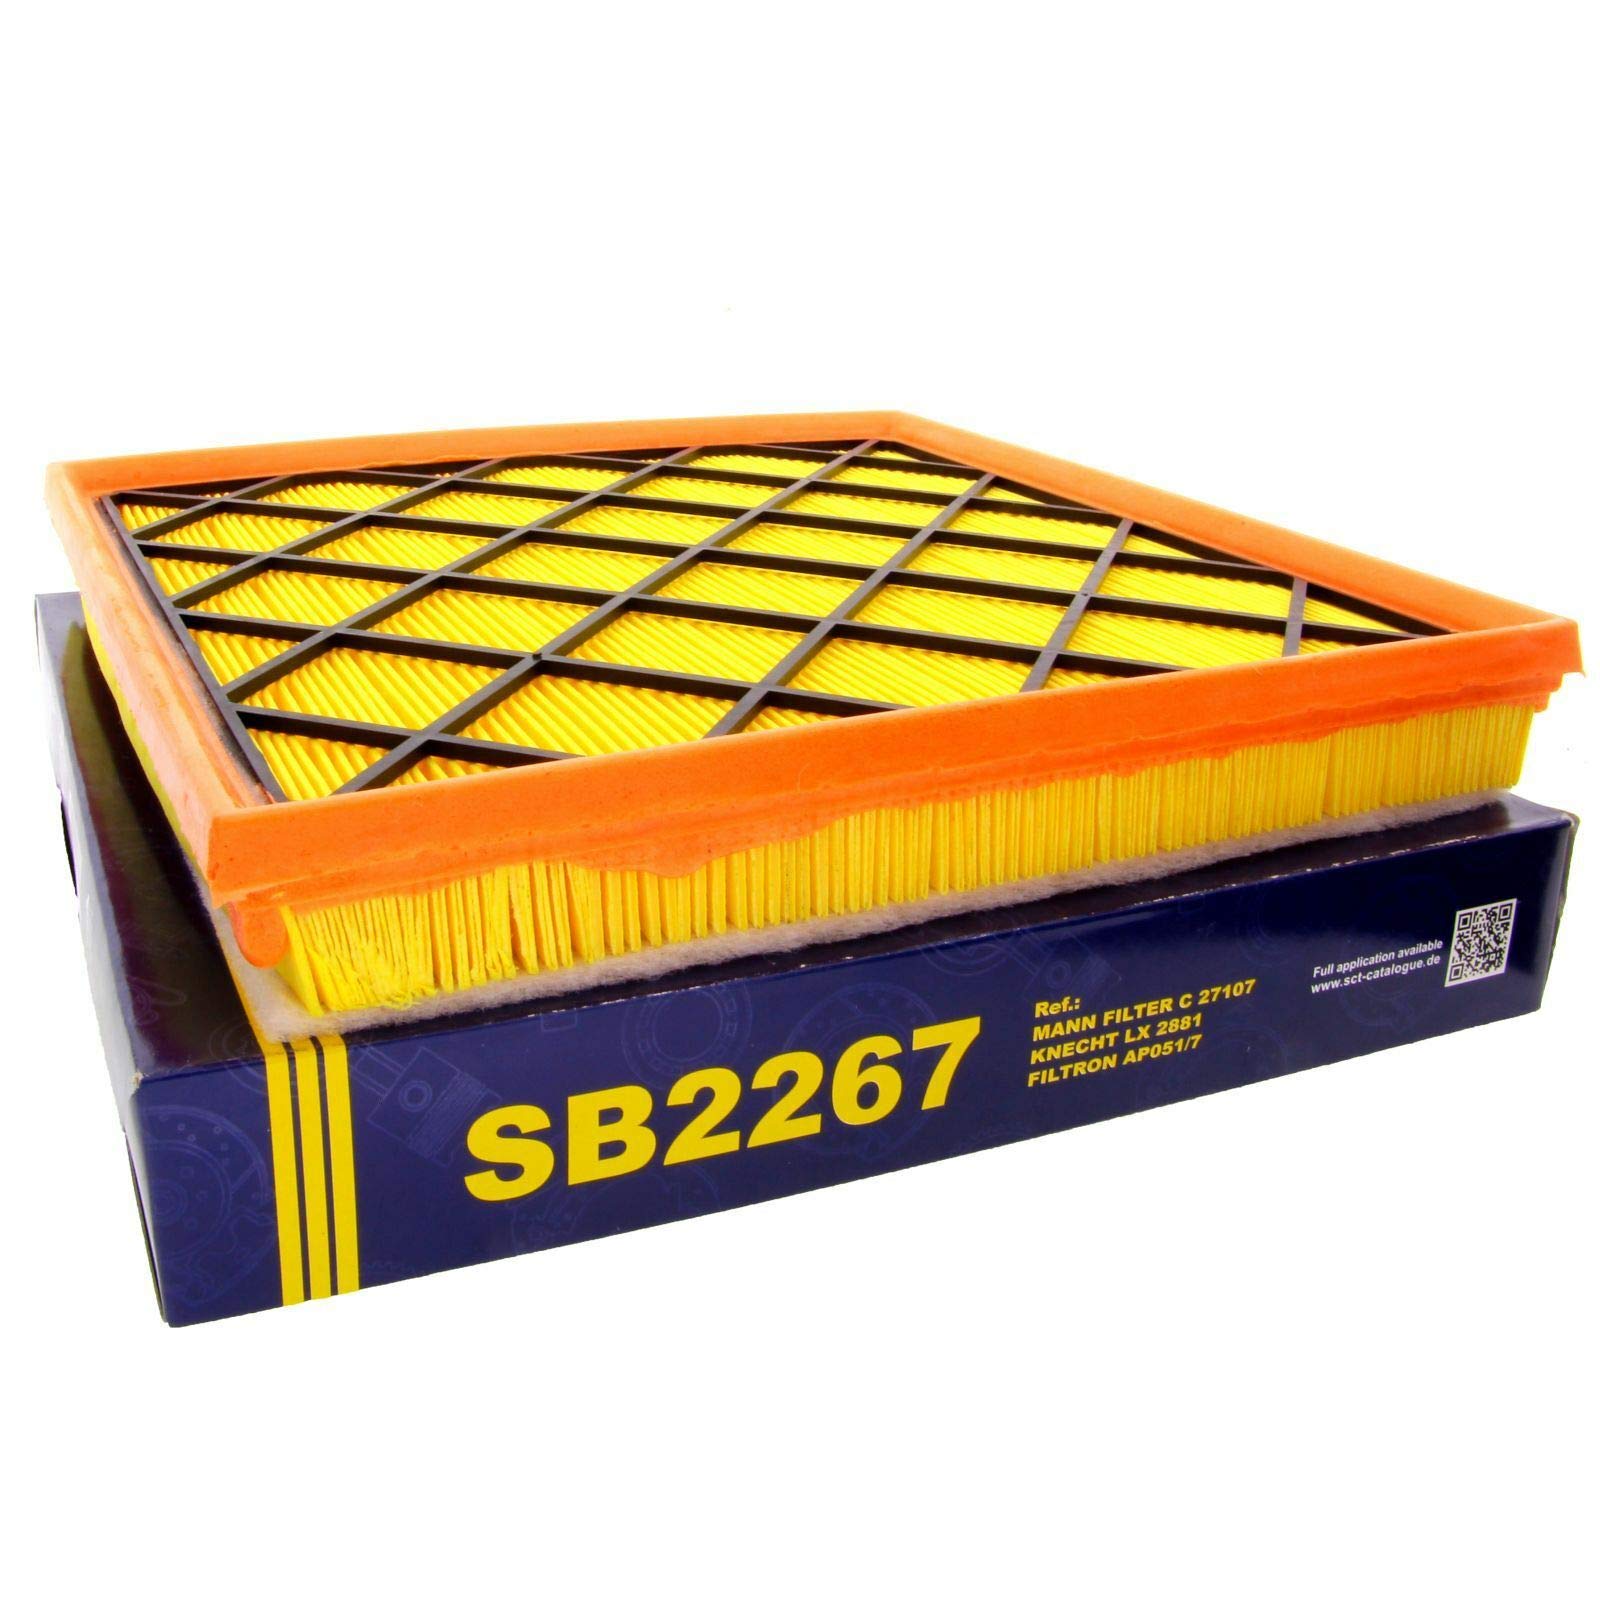 SCT Luftfilter SB2267, Referenznummer: C27107 von SCT Germany